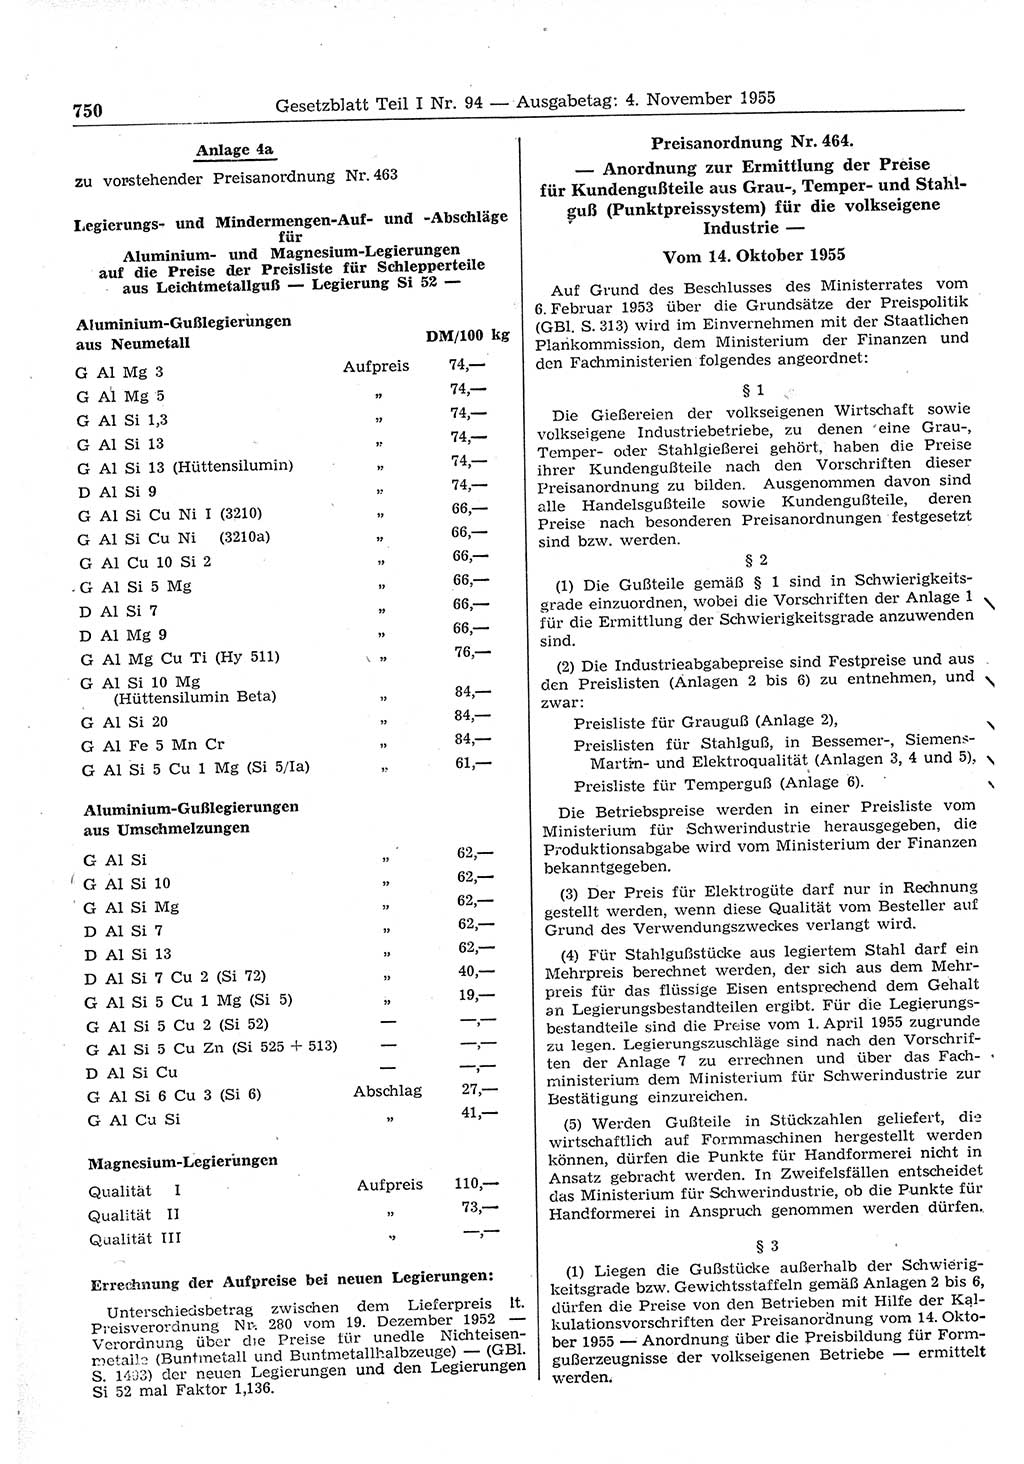 Gesetzblatt (GBl.) der Deutschen Demokratischen Republik (DDR) Teil Ⅰ 1955, Seite 750 (GBl. DDR Ⅰ 1955, S. 750)